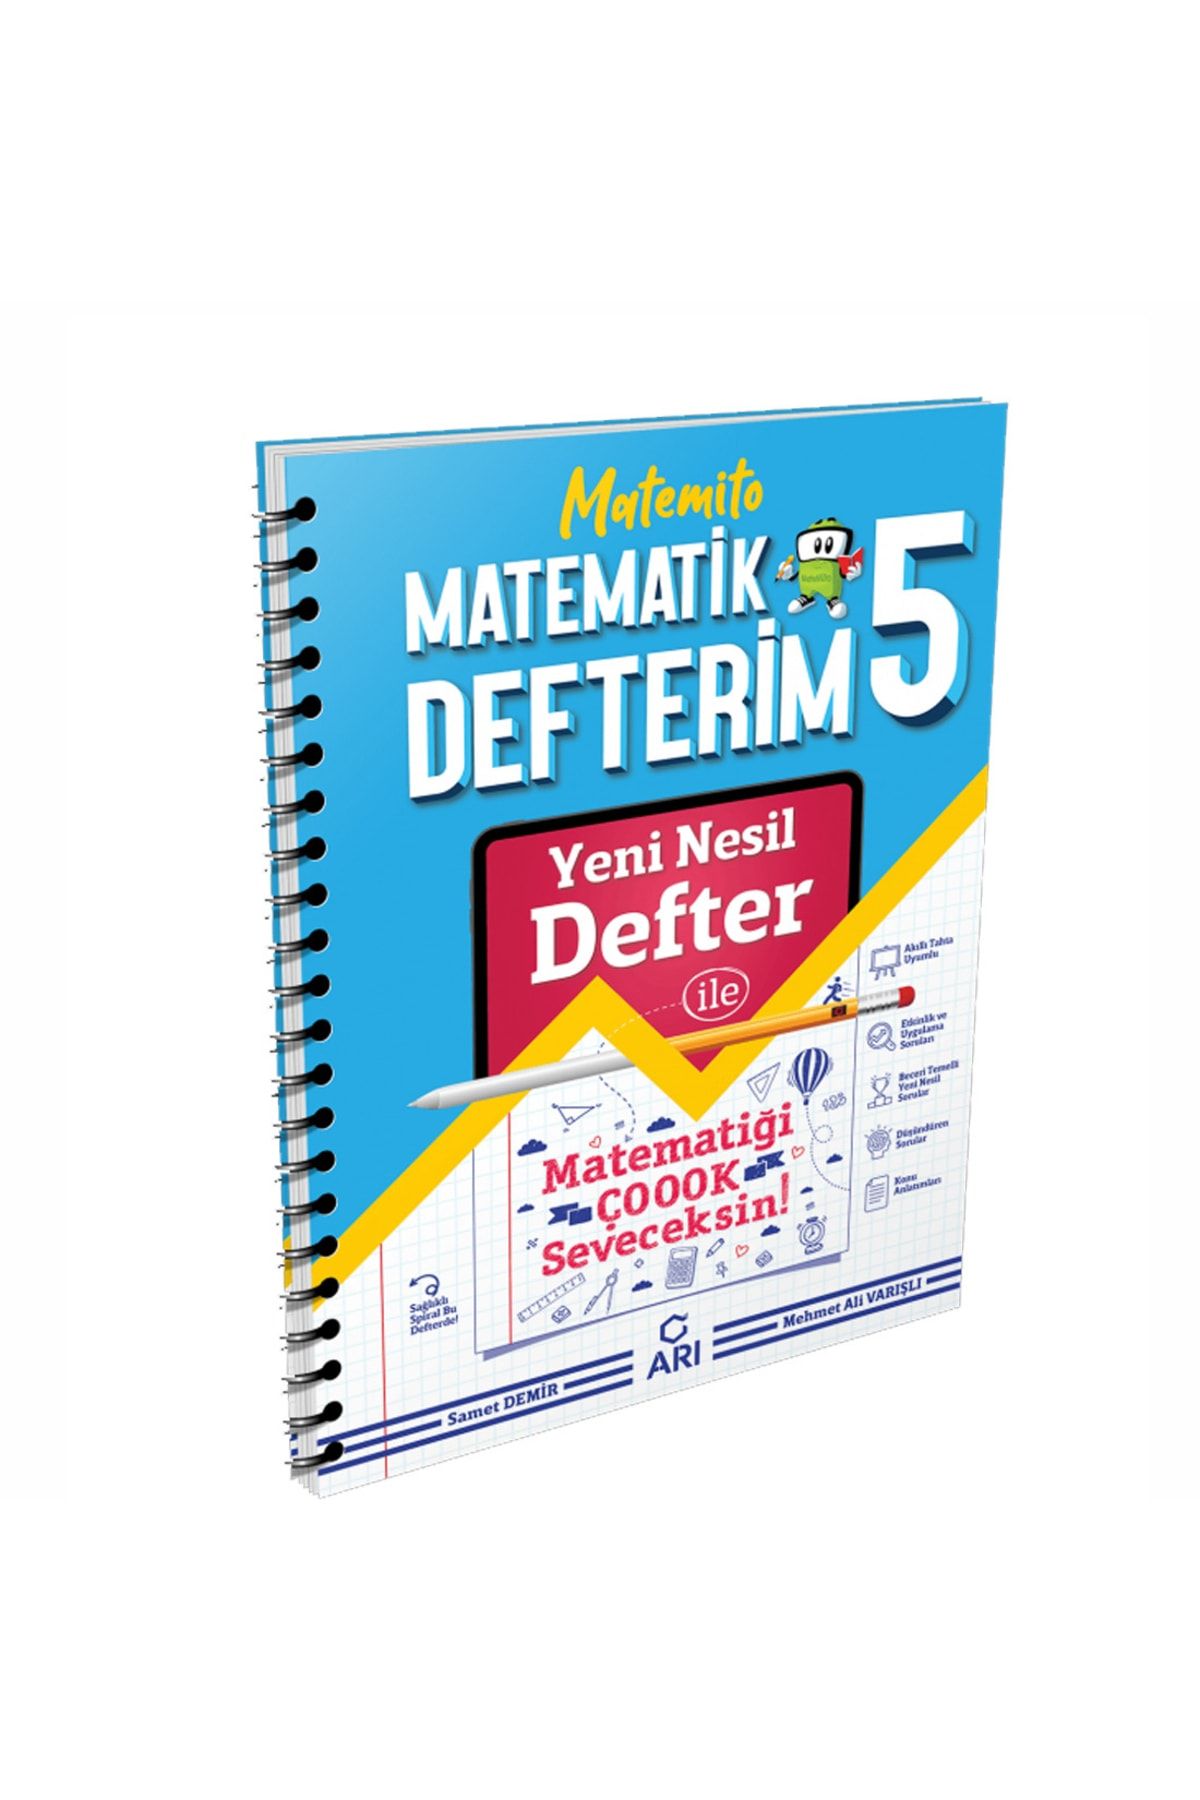 Arı Yayıncılık Matemito Matematik Defterim 5. Sınıf